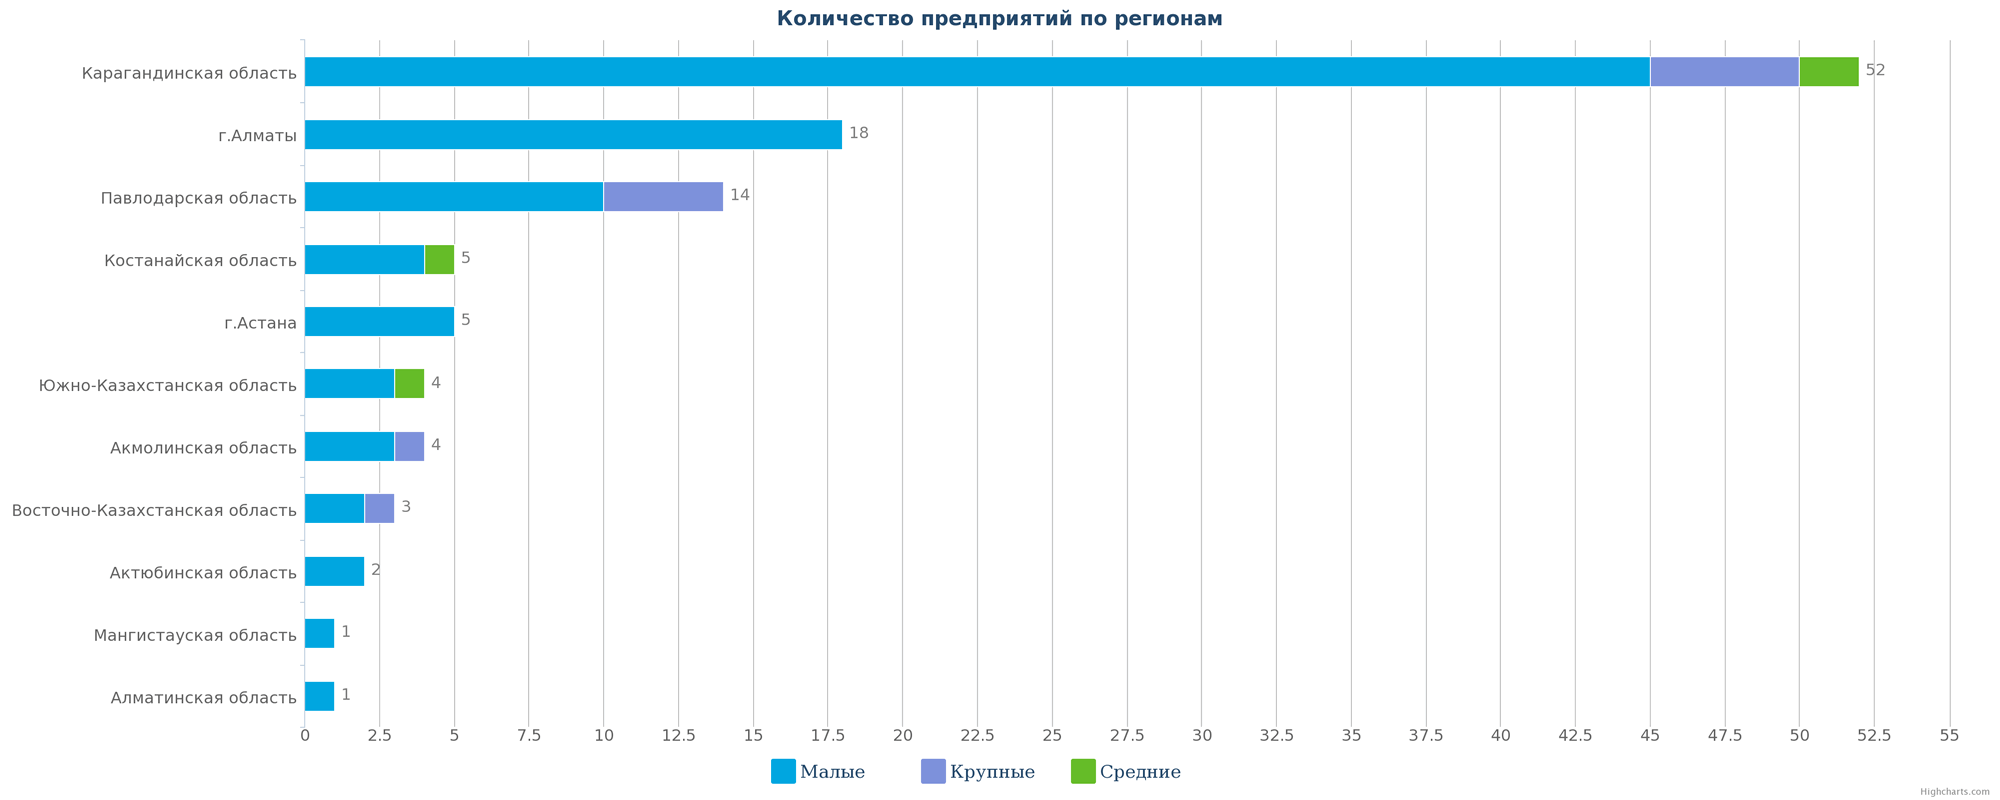 Количество компаний по добыче каменного угля и лигнита  в Казахстане по регионам